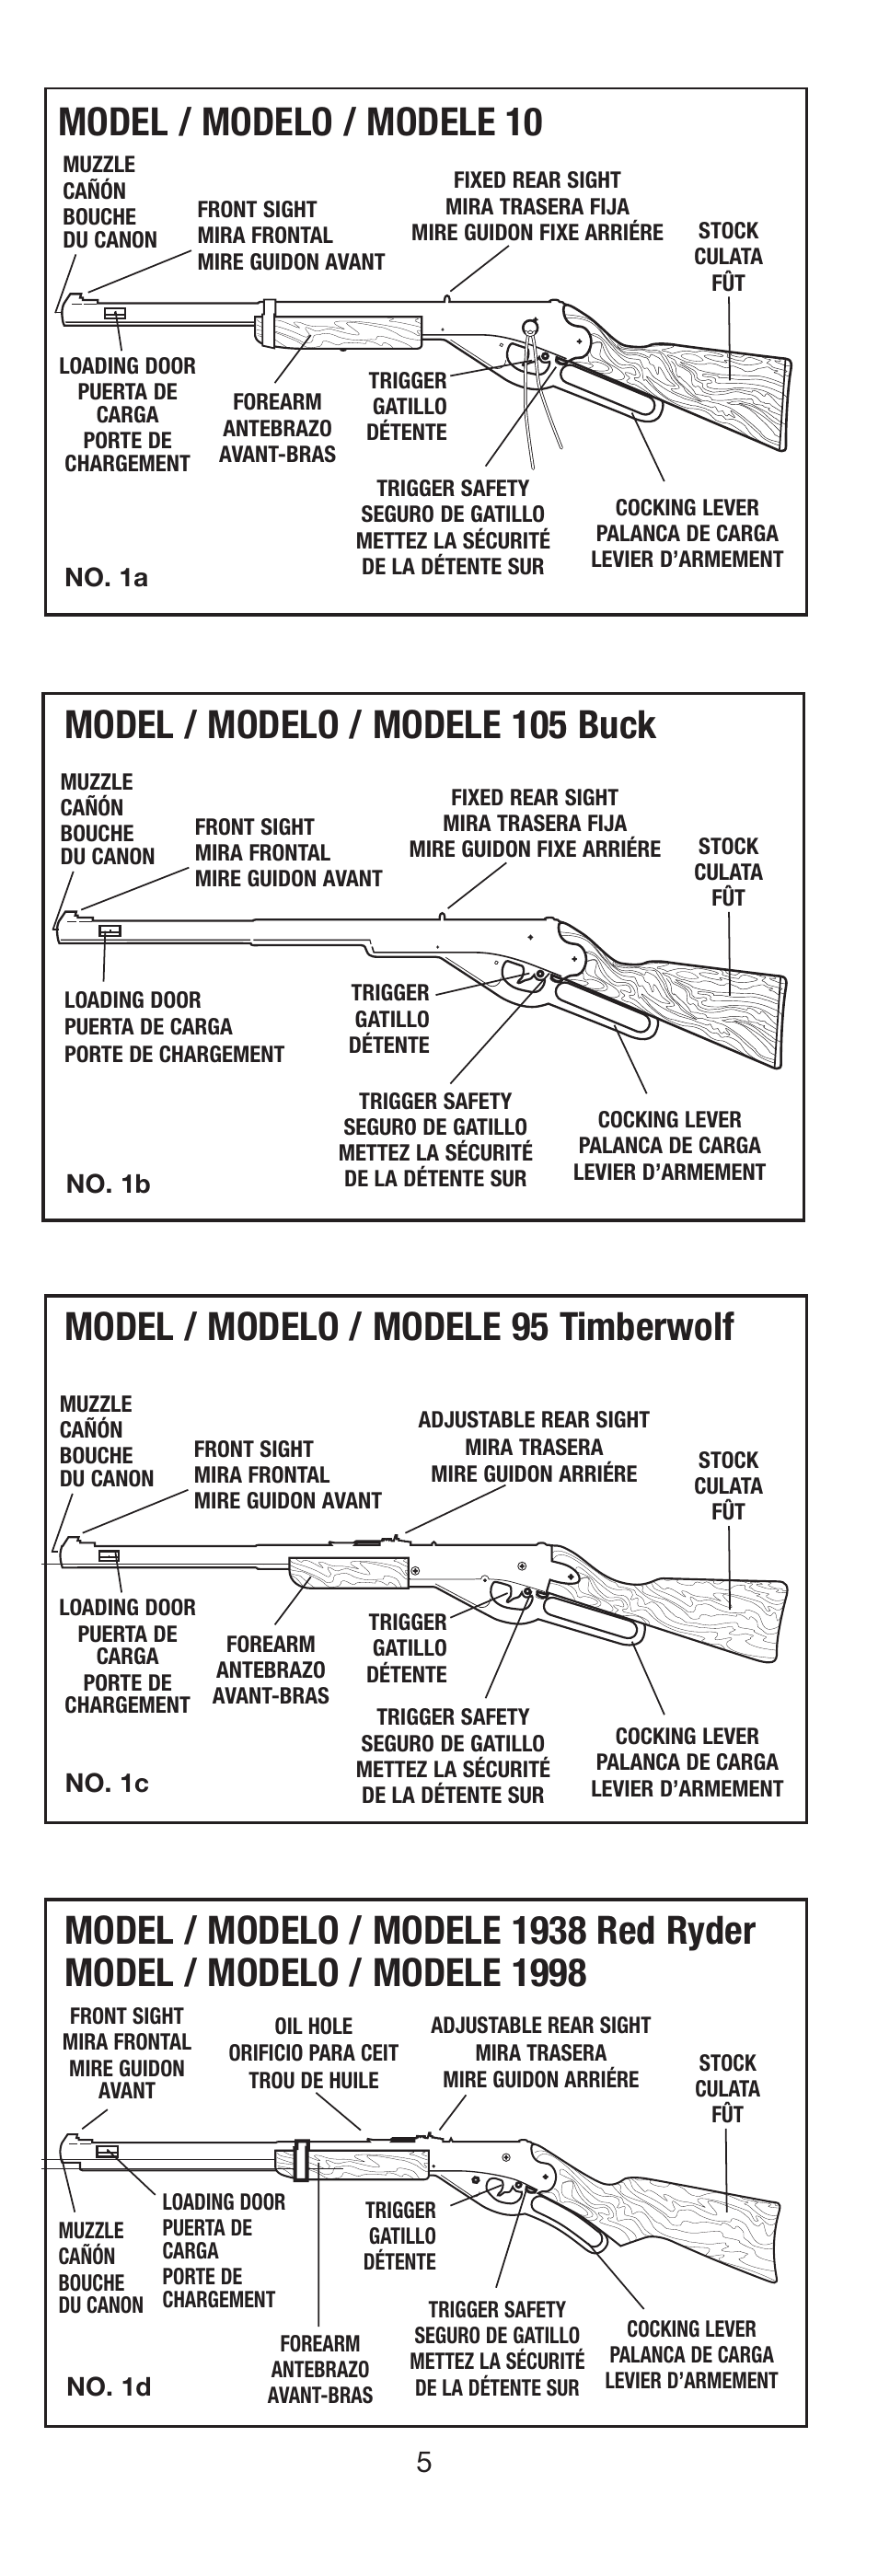 Model / modelo / modele 10 | Daisy 105 Buck User Manual | Page 6 / 36